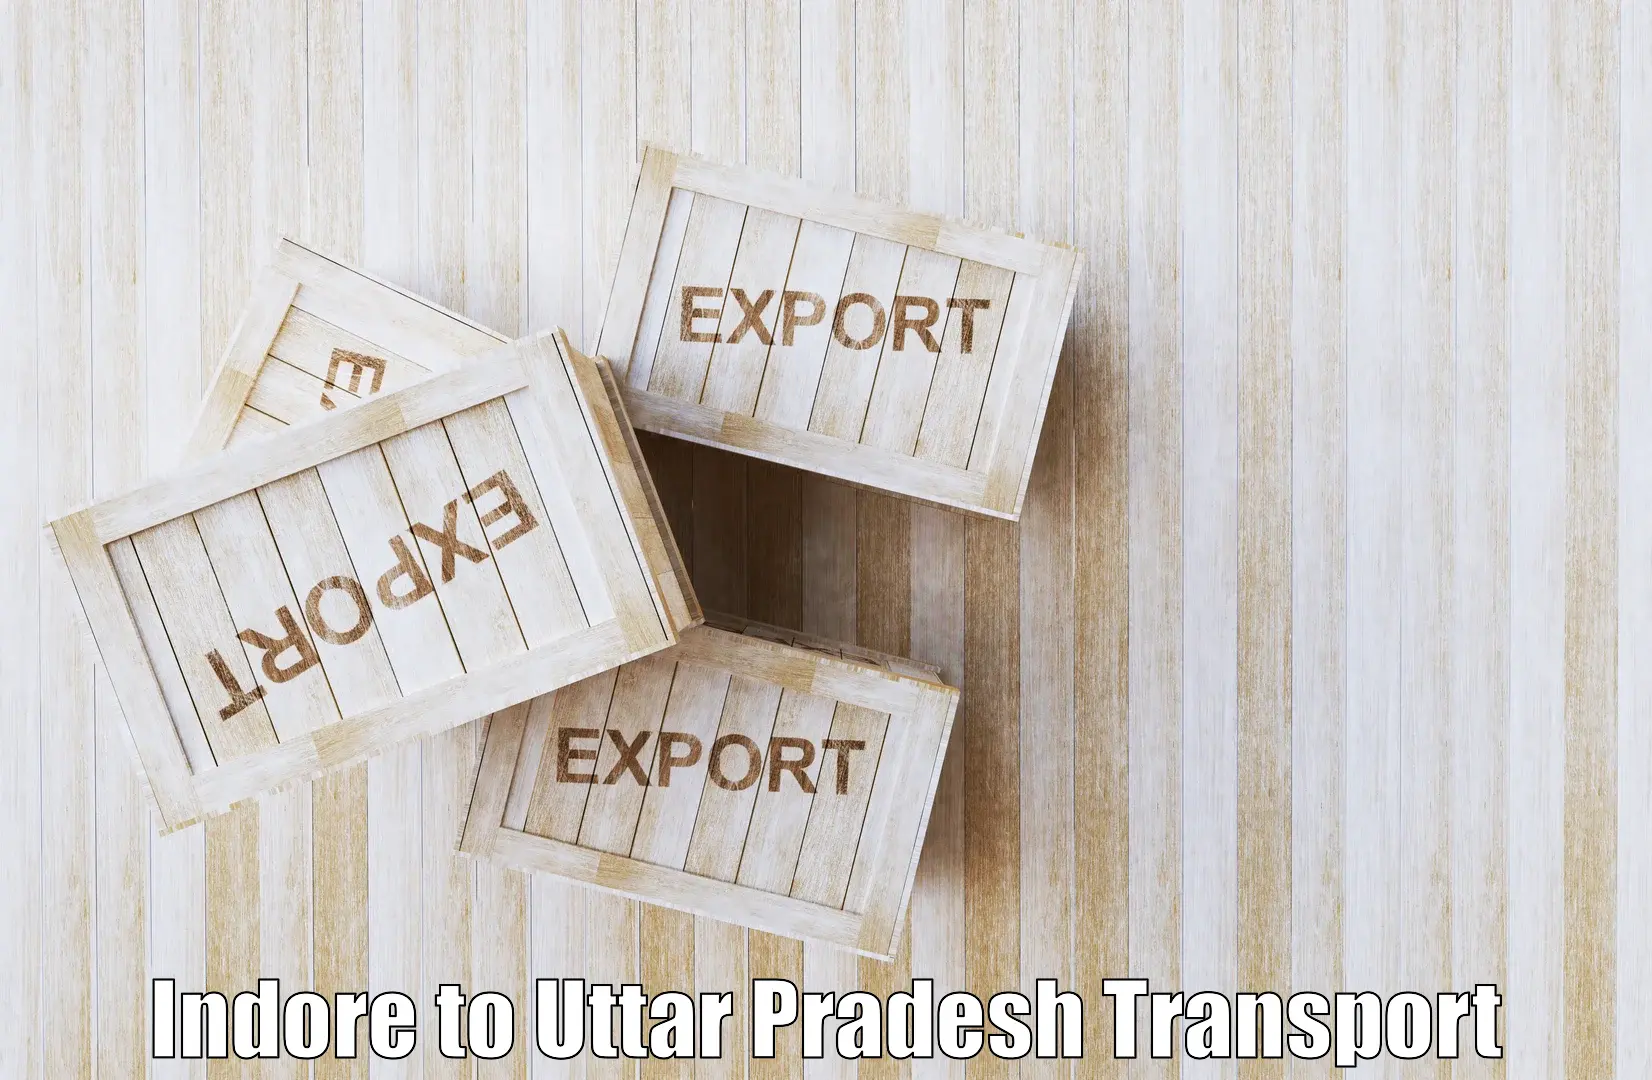 Cargo train transport services Indore to Dibai